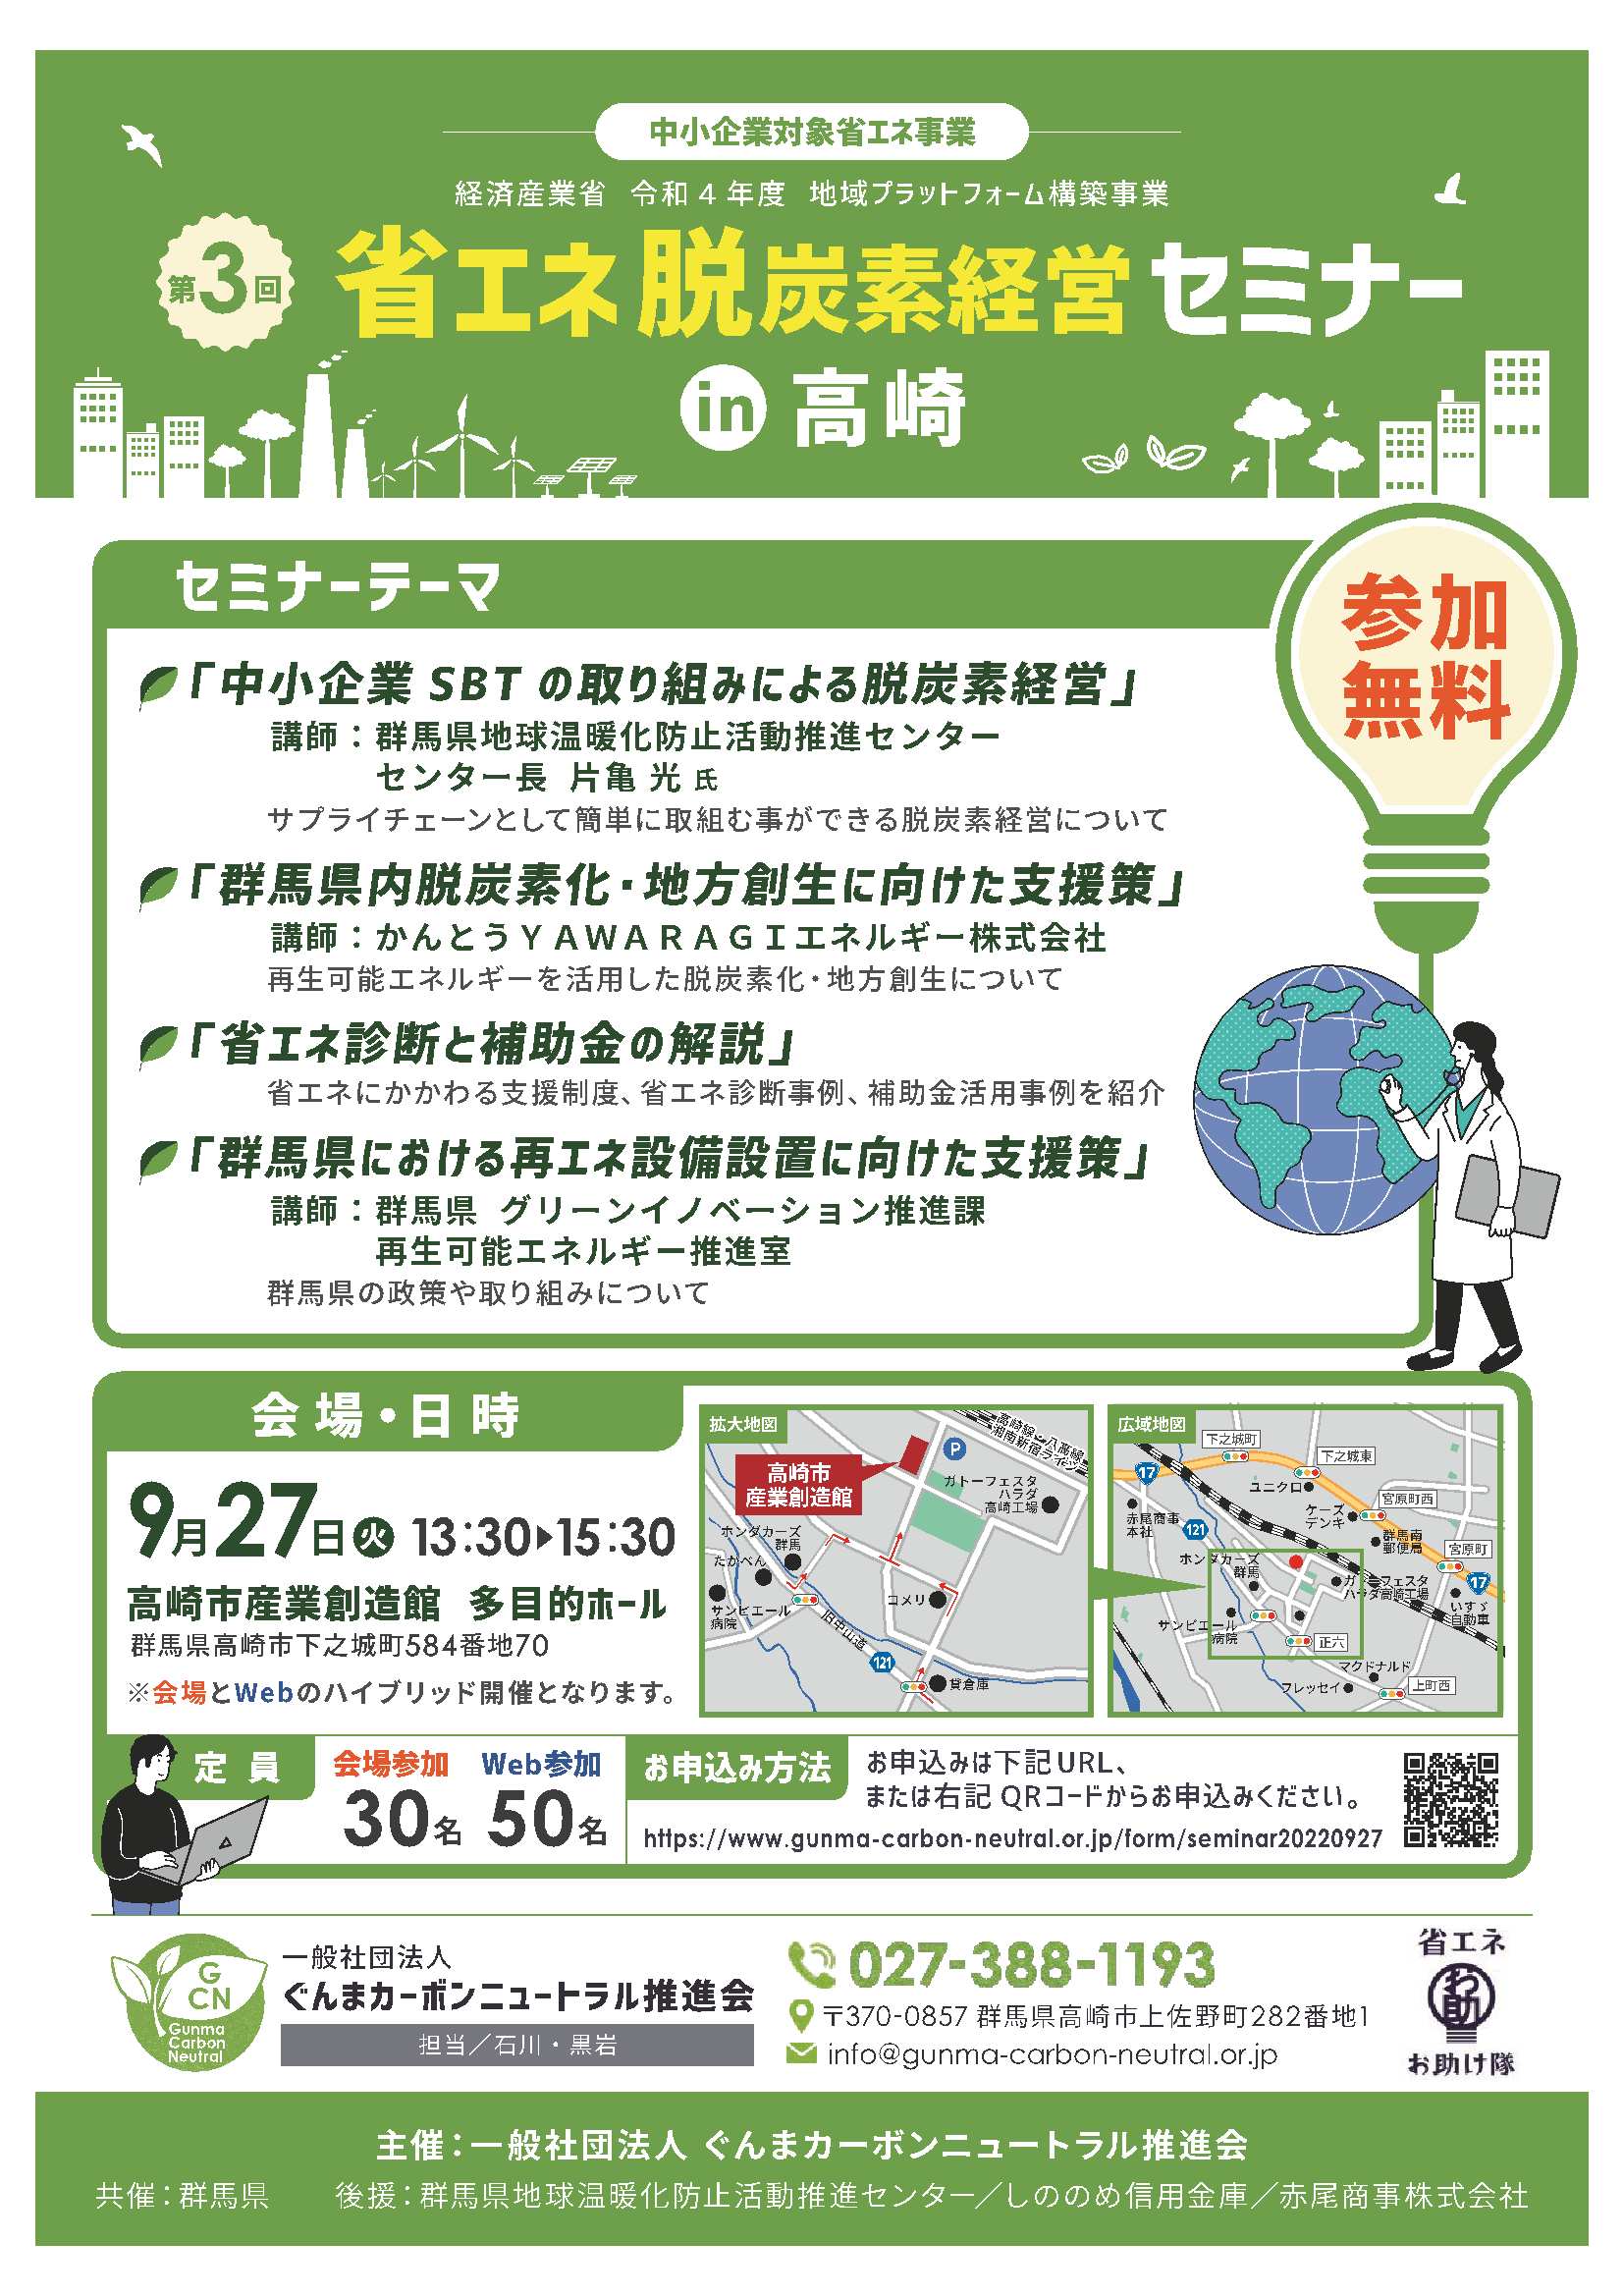 第3回省エネ・脱炭素セミナーin高崎を開催いたします！